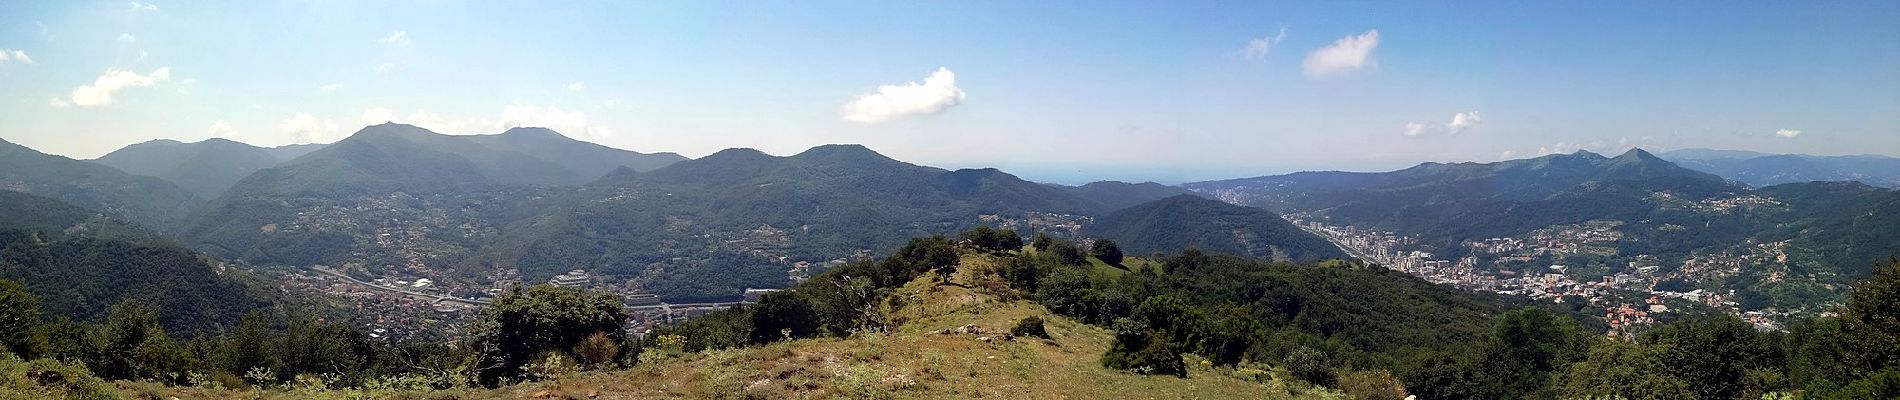 Trail On foot Genoa - Anello Acquedotto Storico di Genova (AQ2) - Photo